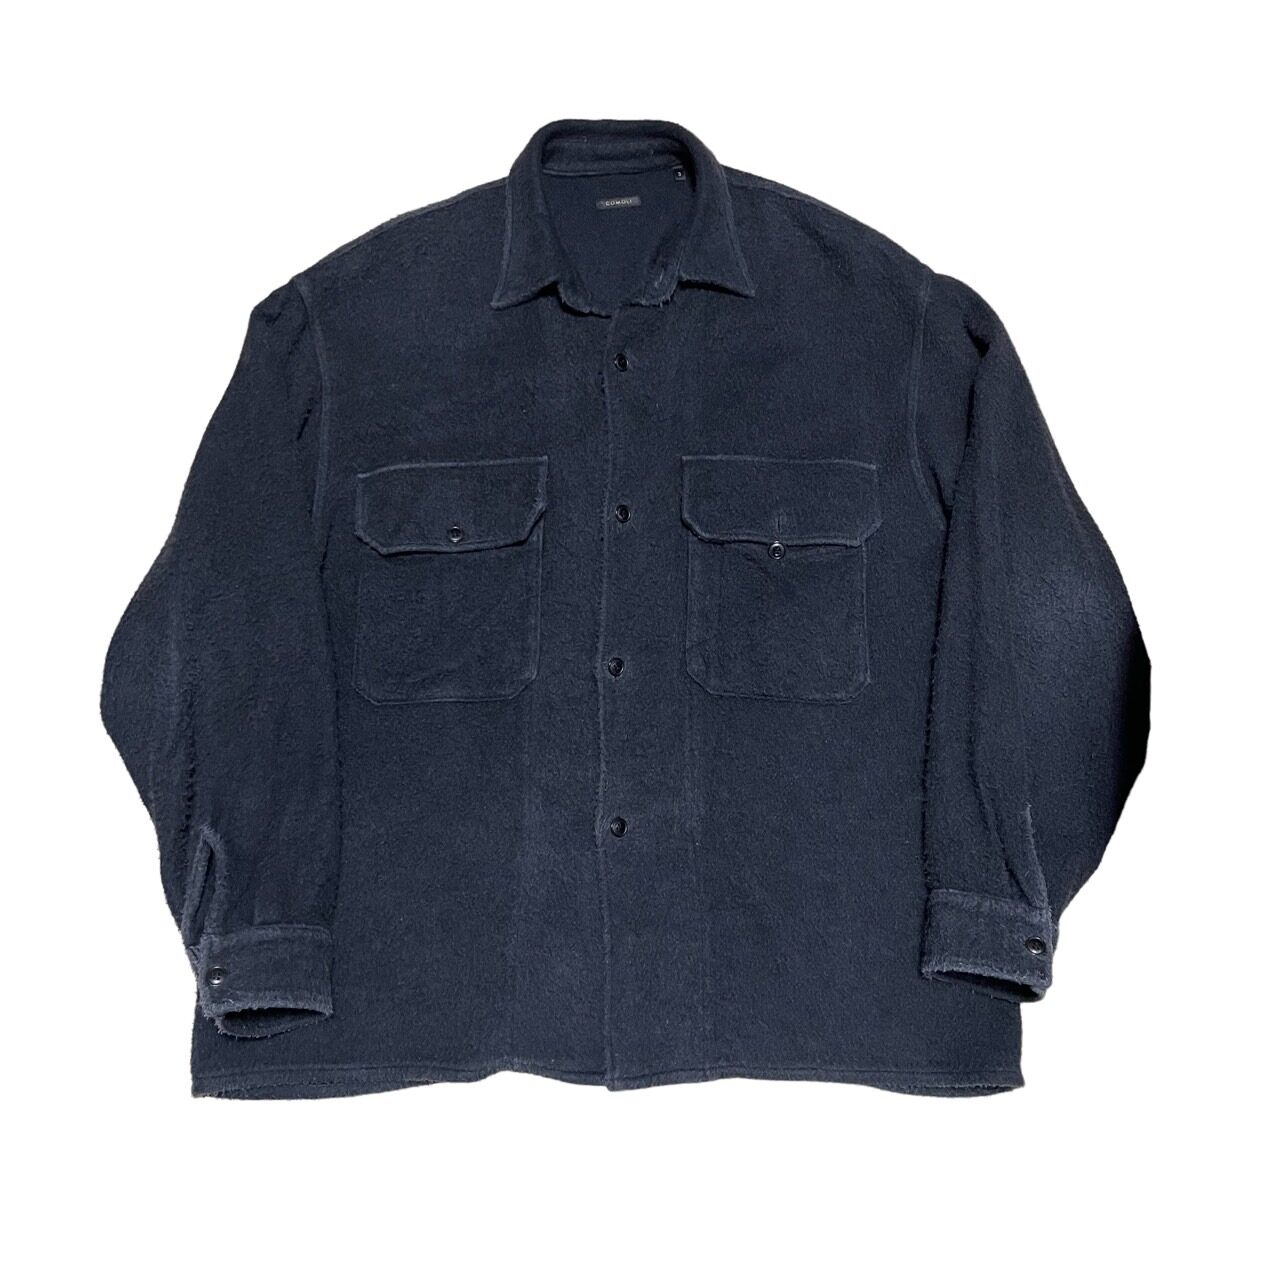 COMOLI BIOTOP Exclusive 20AW Silk fleece CPO SHIRT 買取金額 17,000円